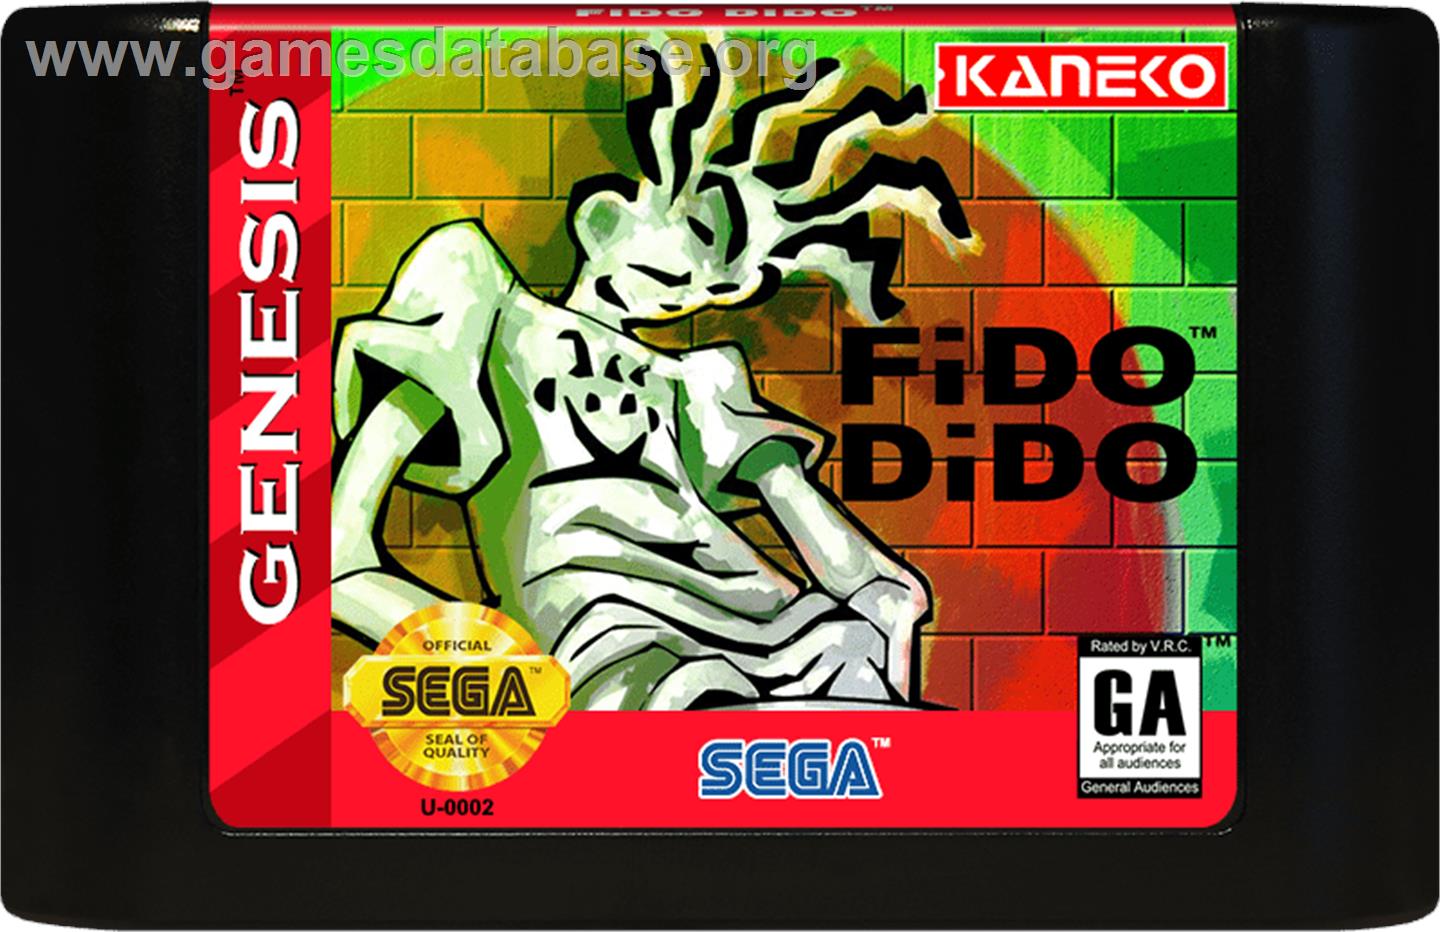 Fido Dido - Sega Genesis - Artwork - Cartridge